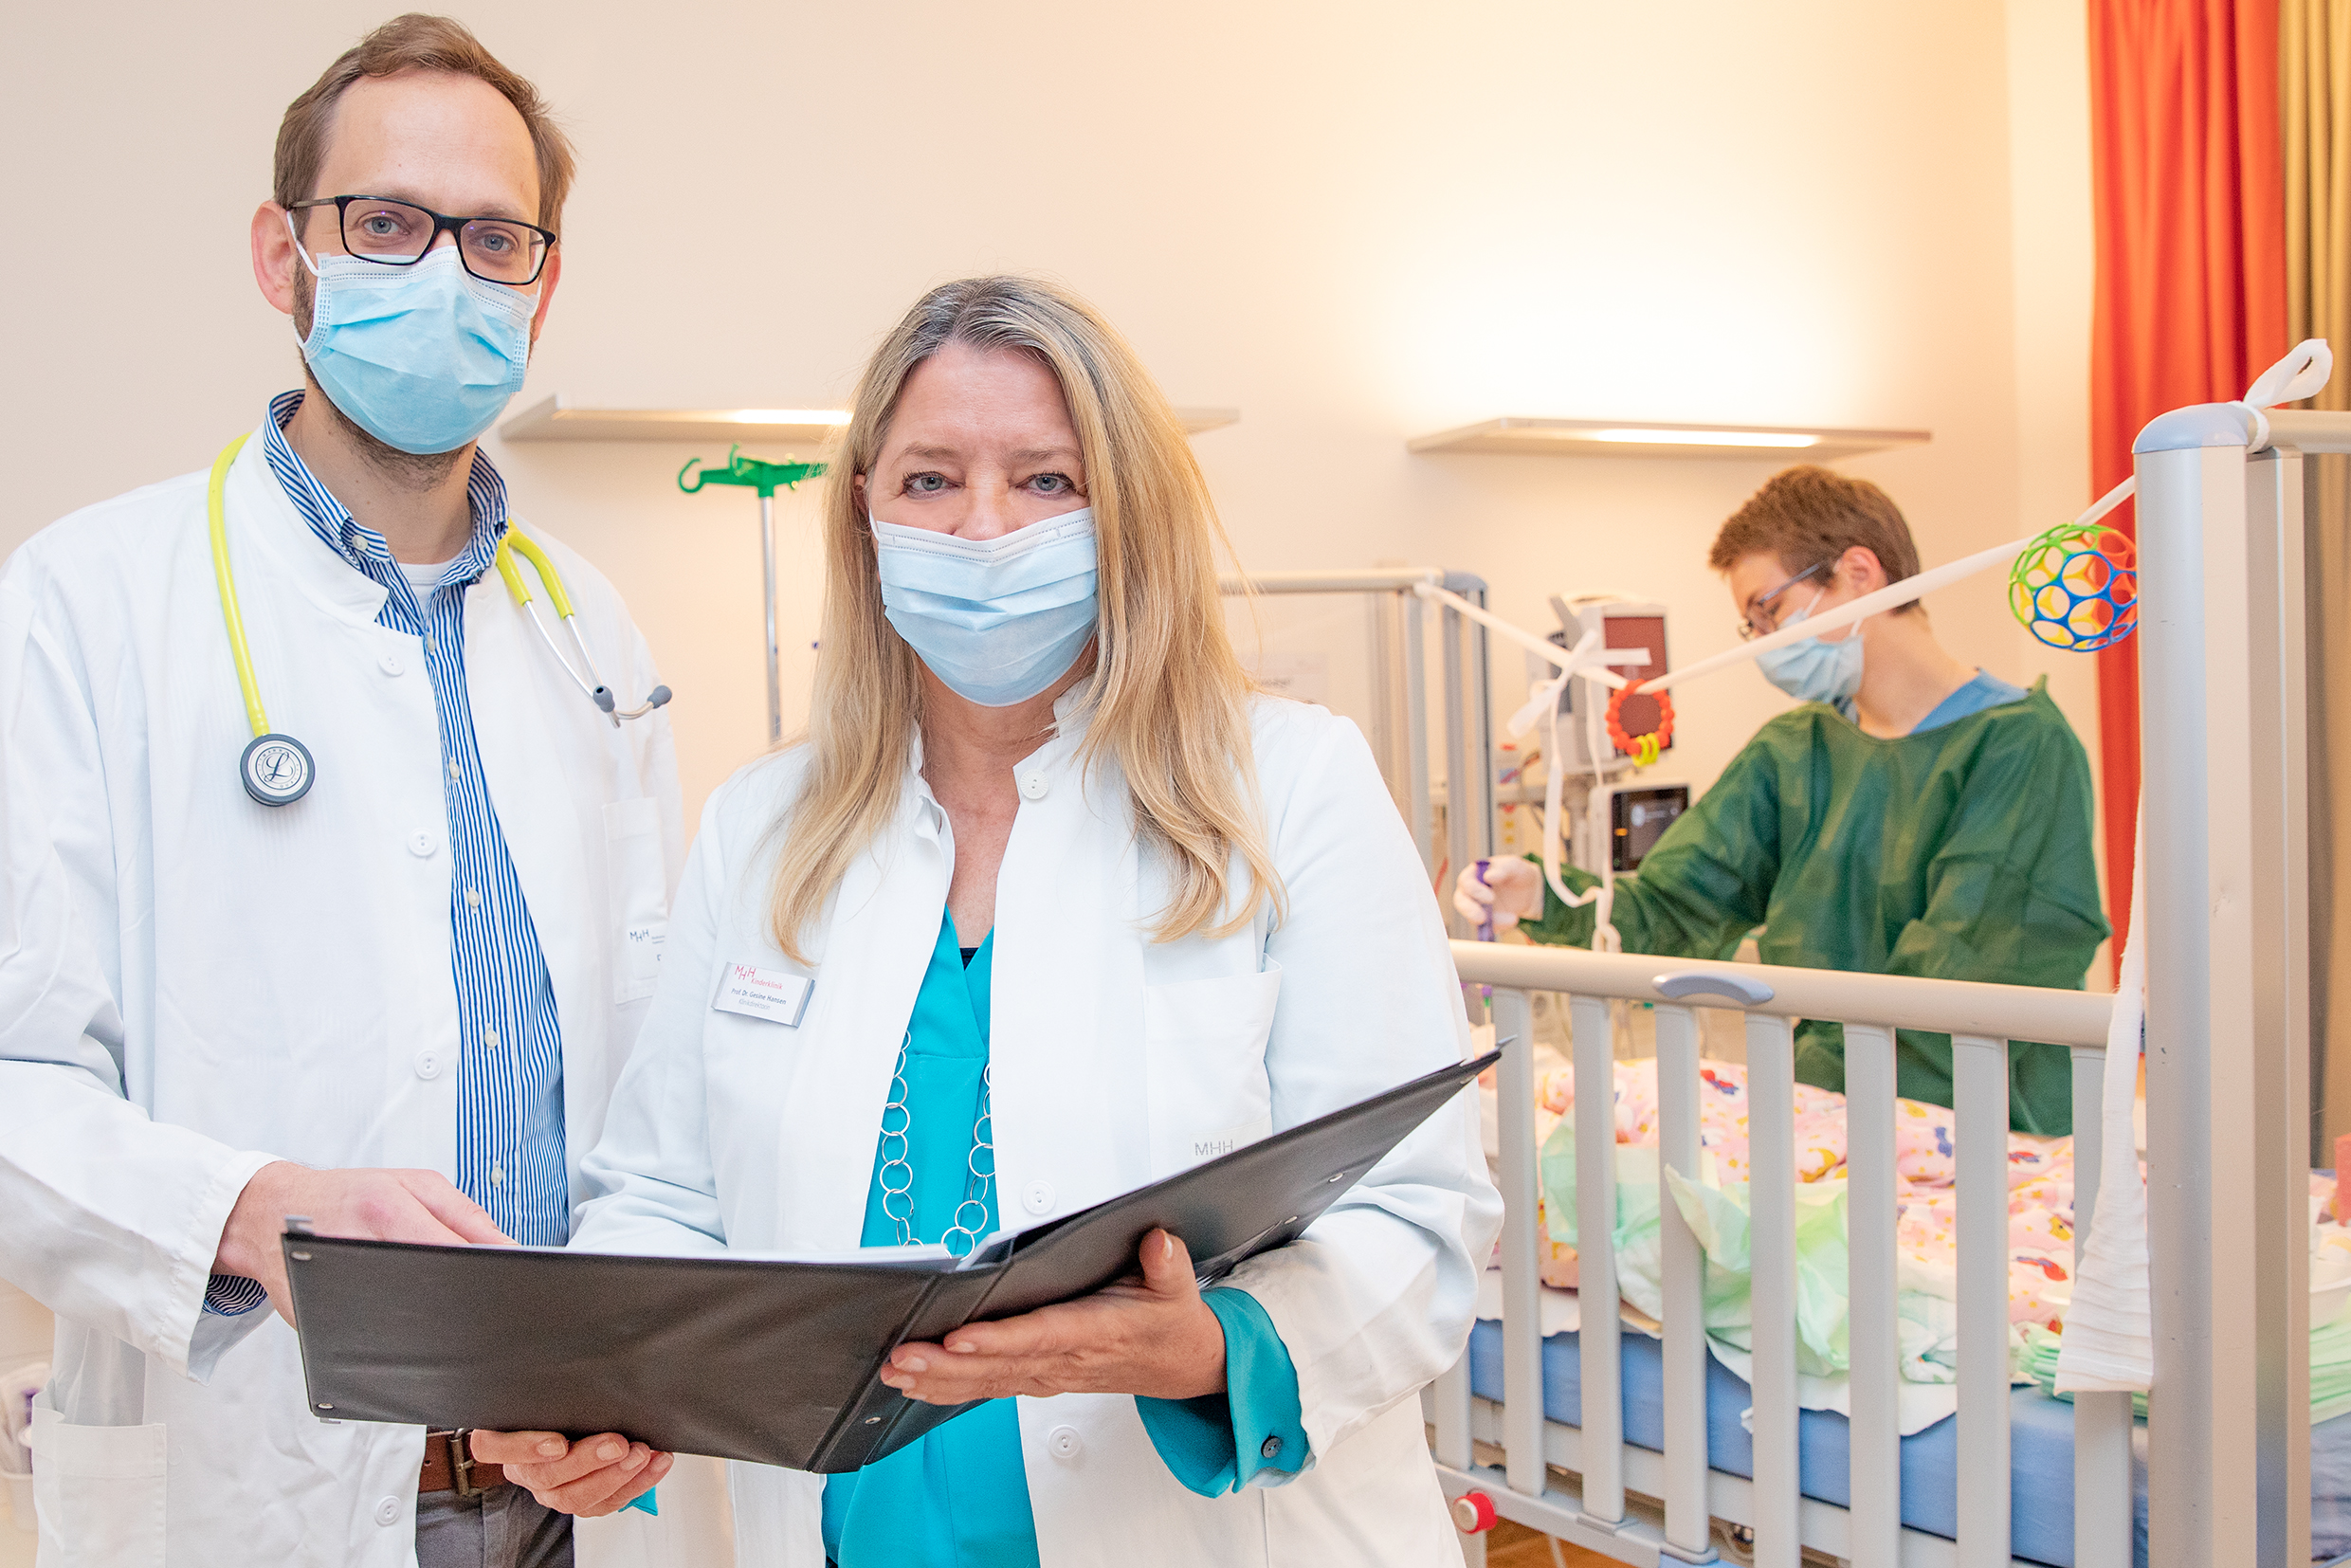 Vor einem Kinderbett in einem Krankenzimmer stehen PD Dr. Martin Wetzke und Professorin Dr. Gesine Hansen. Am Bett kümmert sich eine Pflegerin um ein krankes Kind.